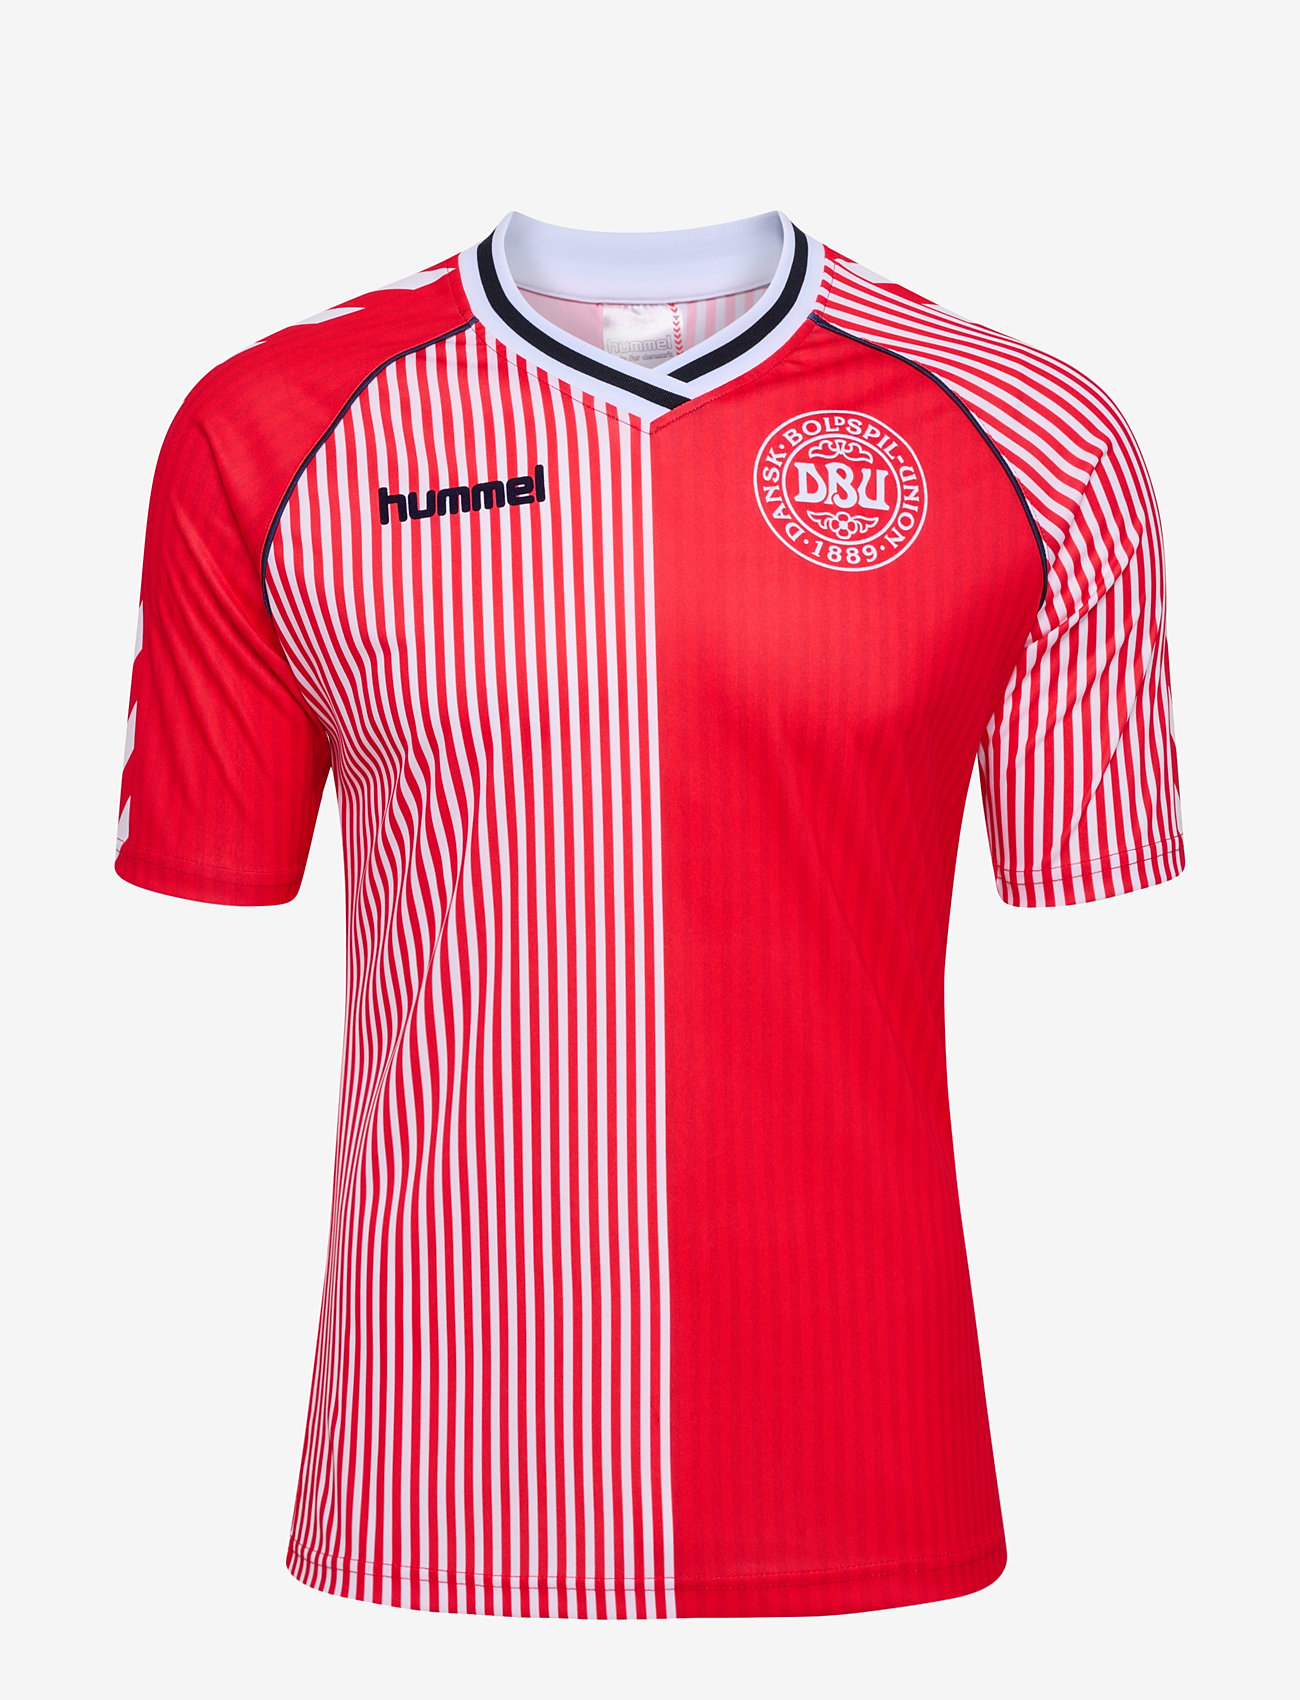 Hummel - DBU 86 REPLICA JERSEY S/S - koszulki piłkarskie - red/white - 0